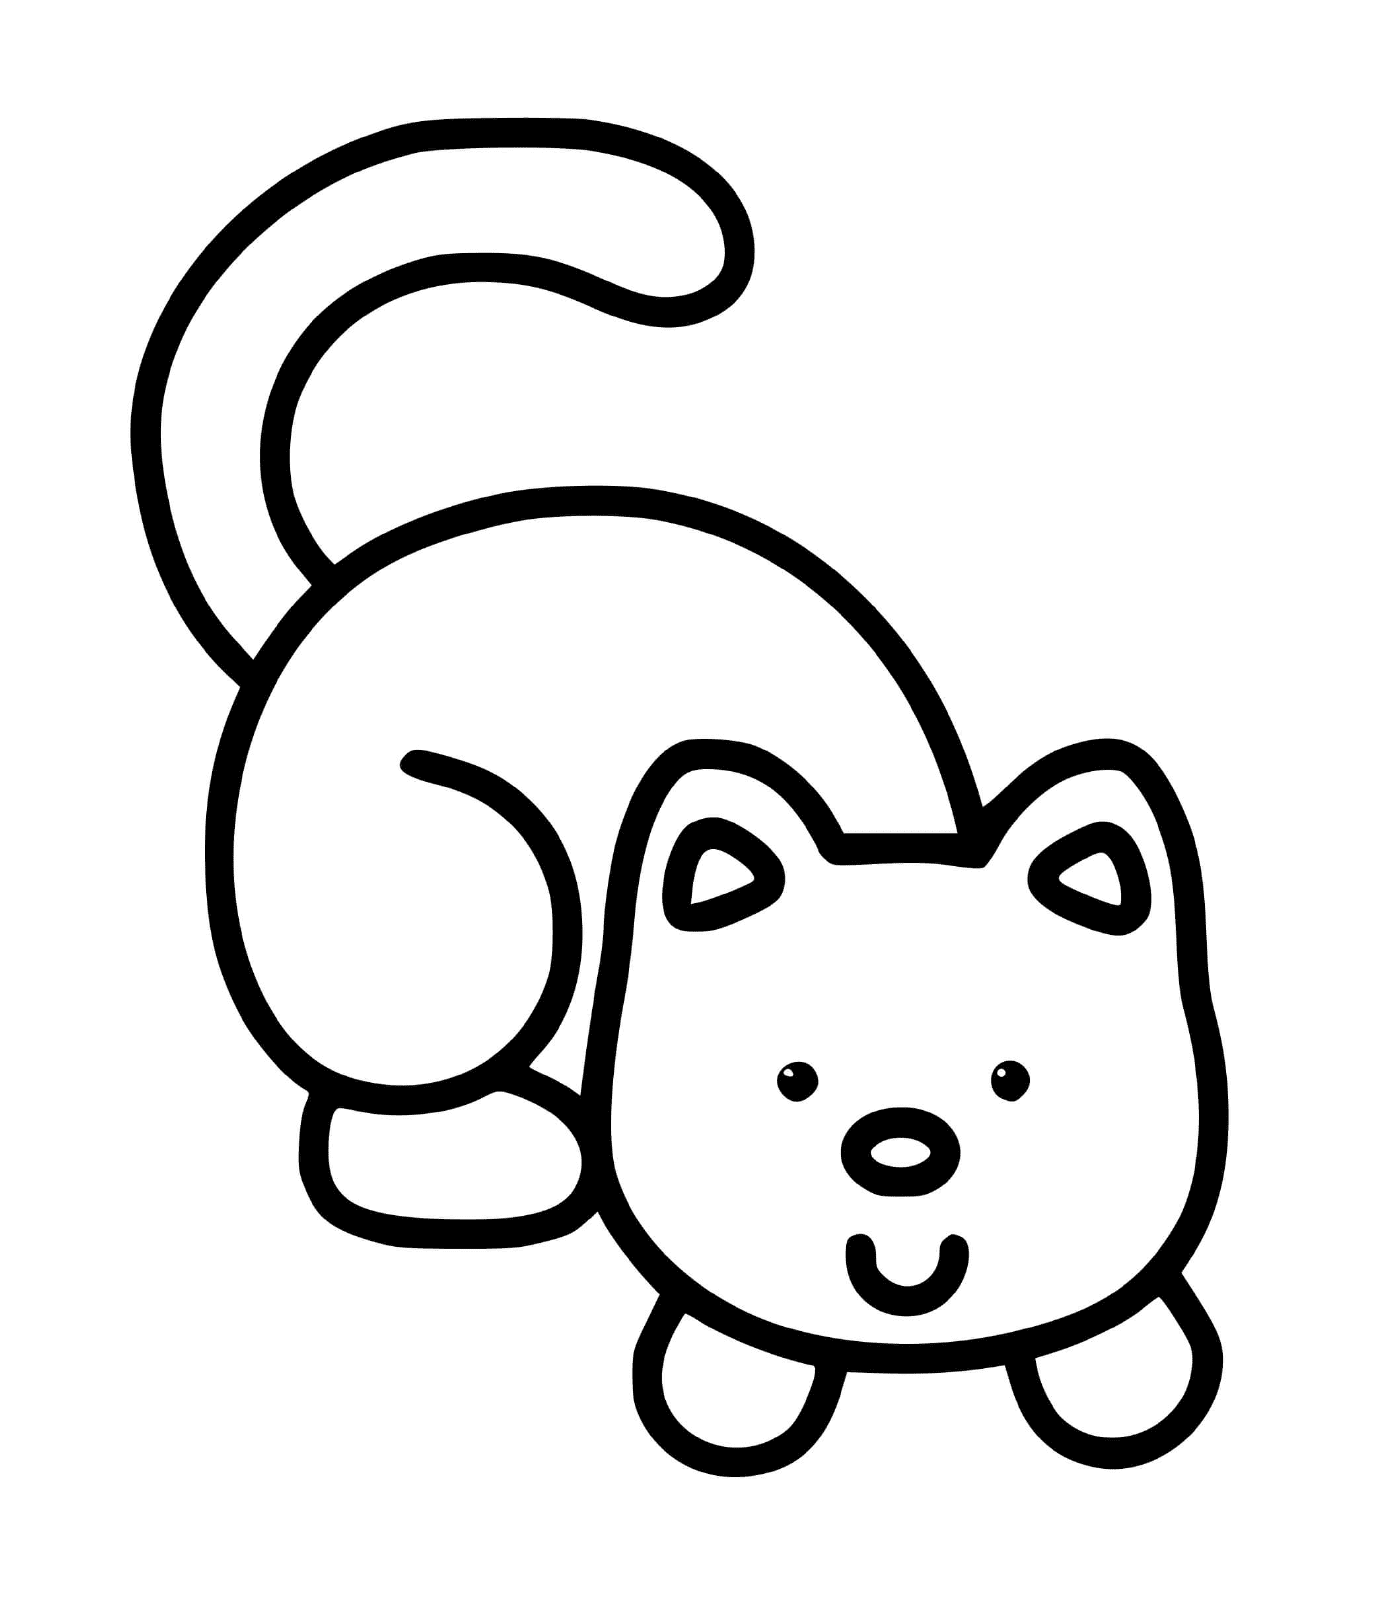   Un chat facile à dessiner pour les enfants de 2 ans 